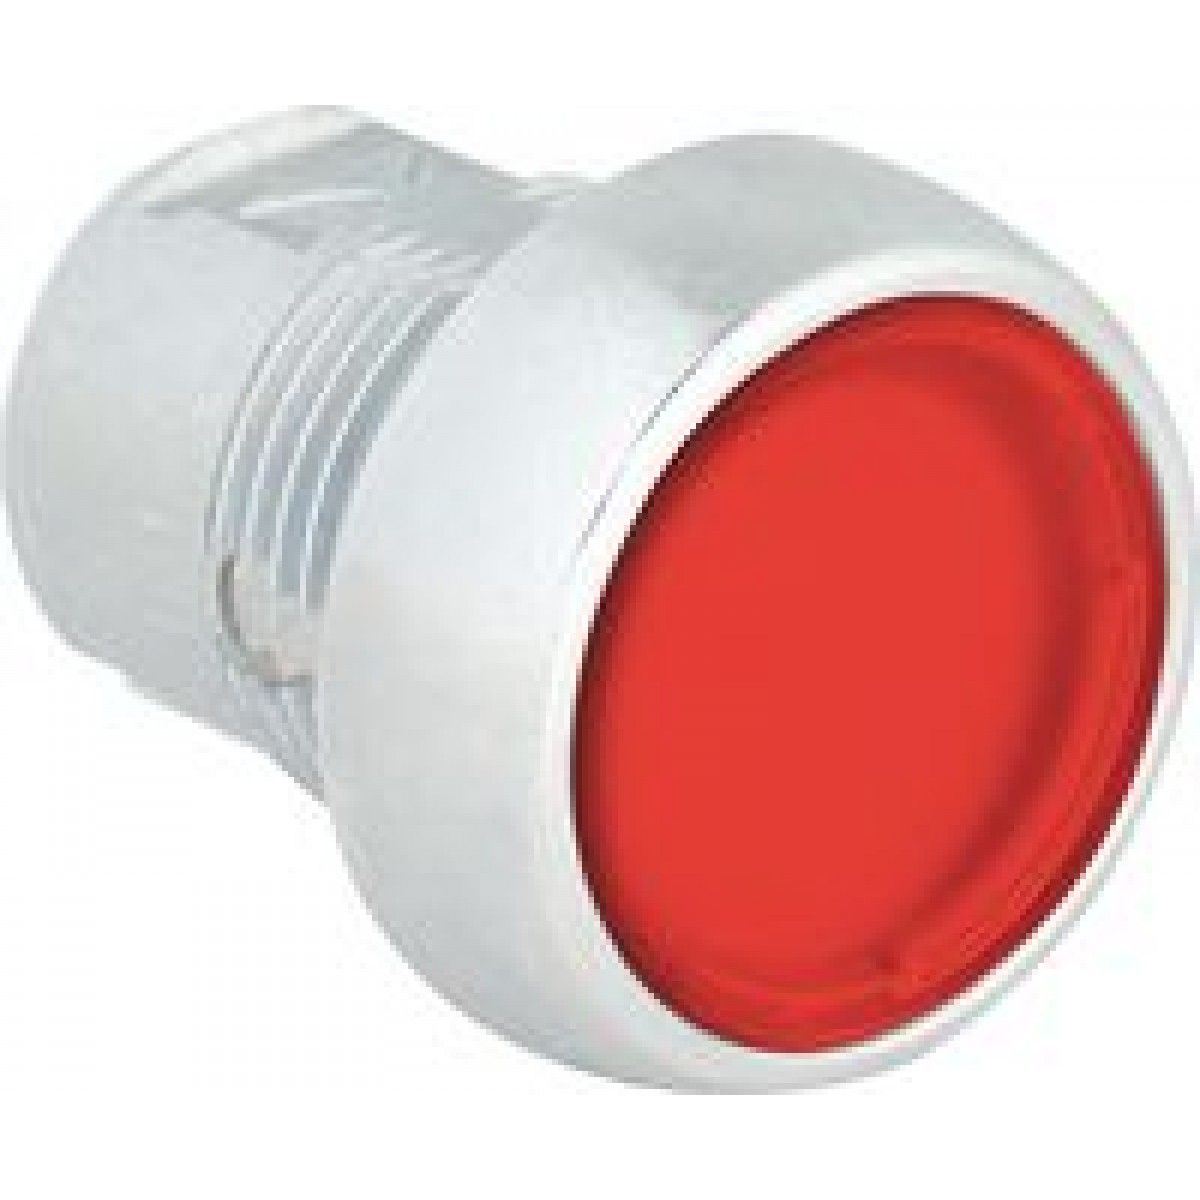 Кнопка флеш. 800fp-lf3. Лампа сигнальная 30 мм, для опасных зон, красная Allen-Bradley 800g-p4. Кнопки. FP 50. IEC круглый.